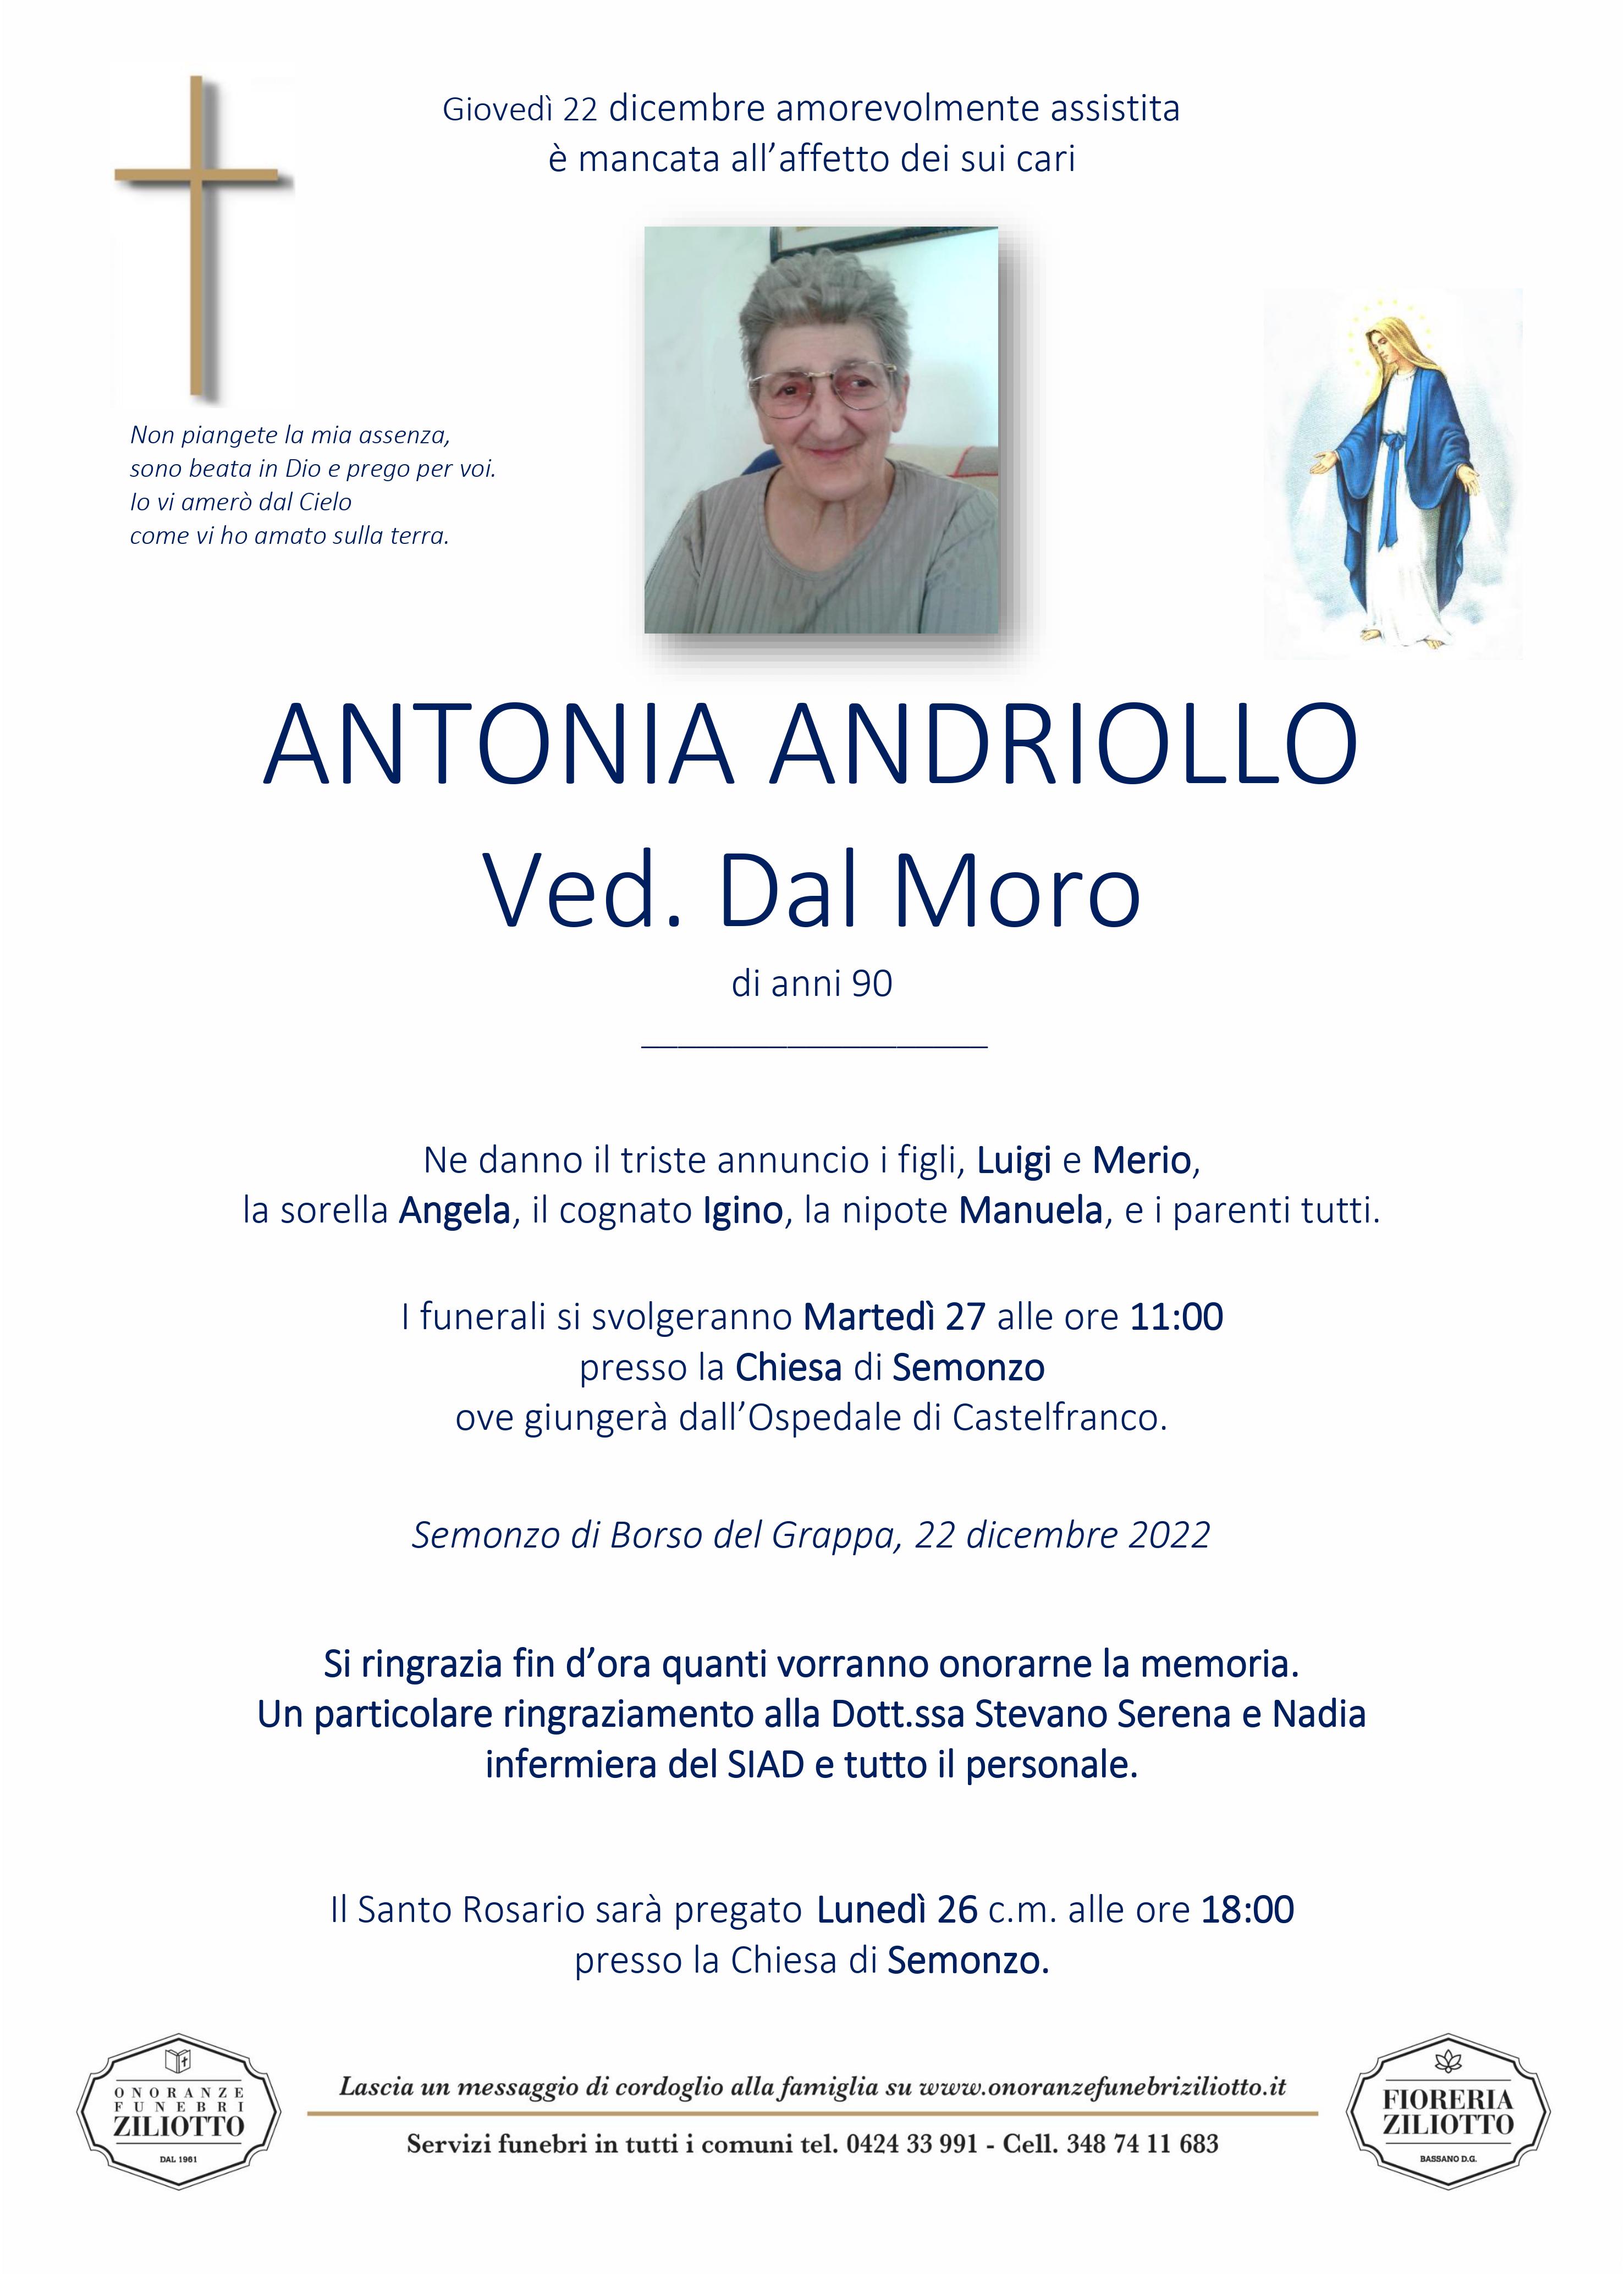 Andriollo Antonia - 90 anni - Borso del Grappa